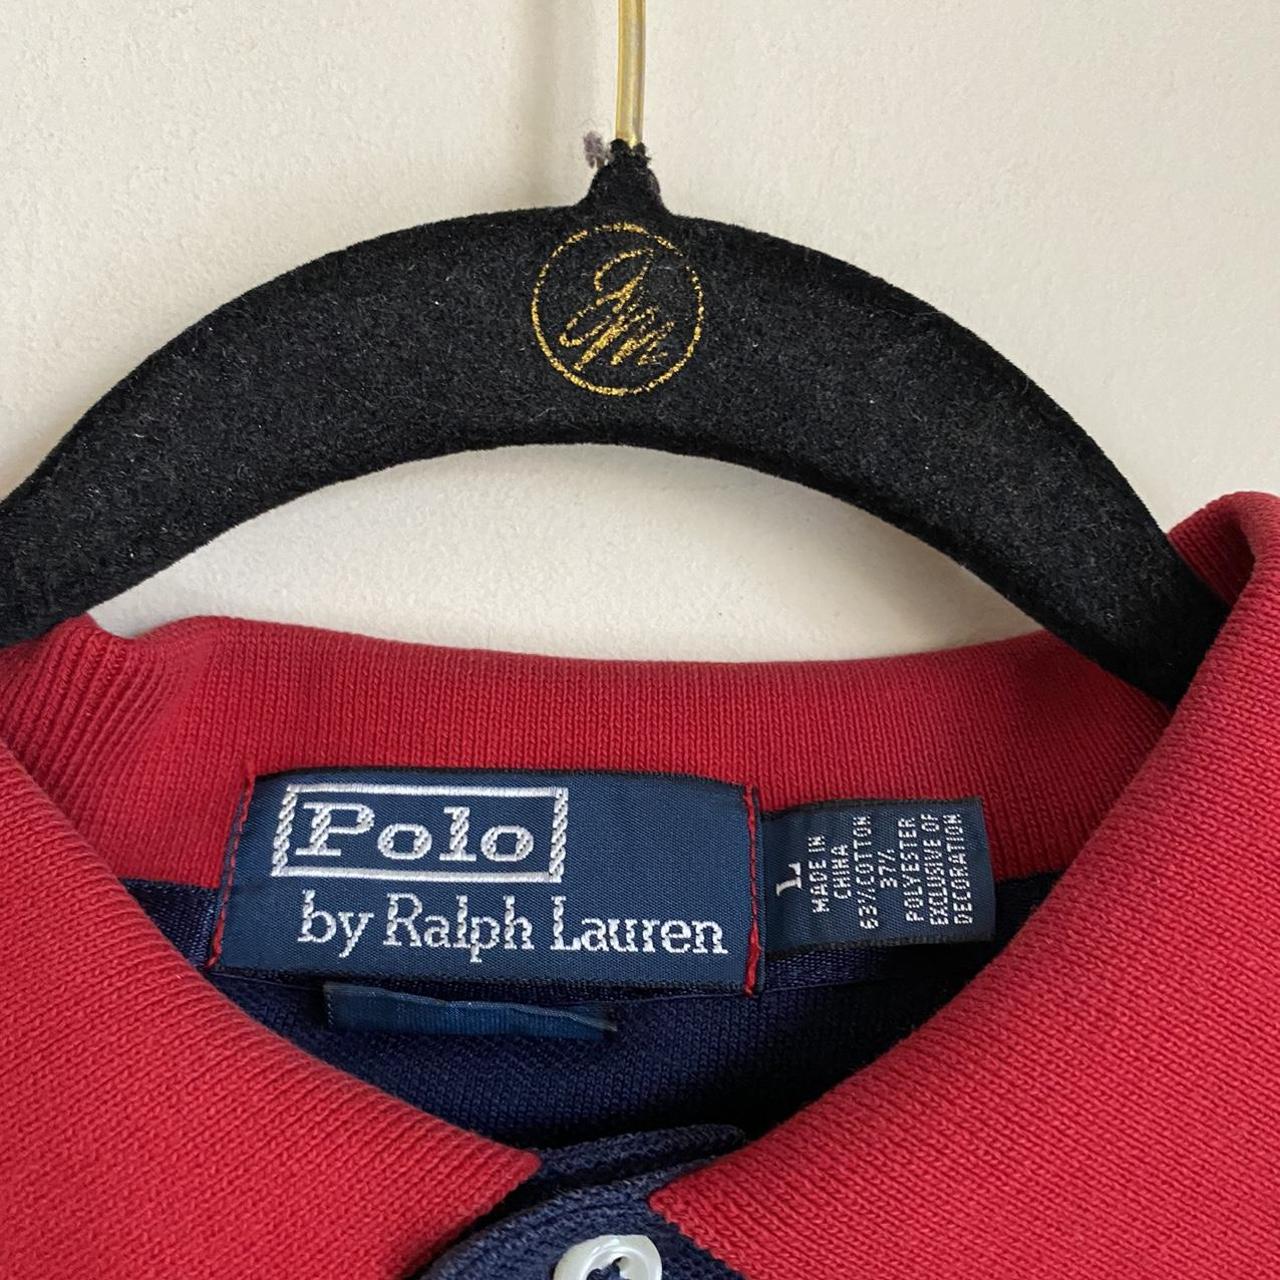 Polo Ralph Lauren 2010 US open polo shirt Size:... - Depop